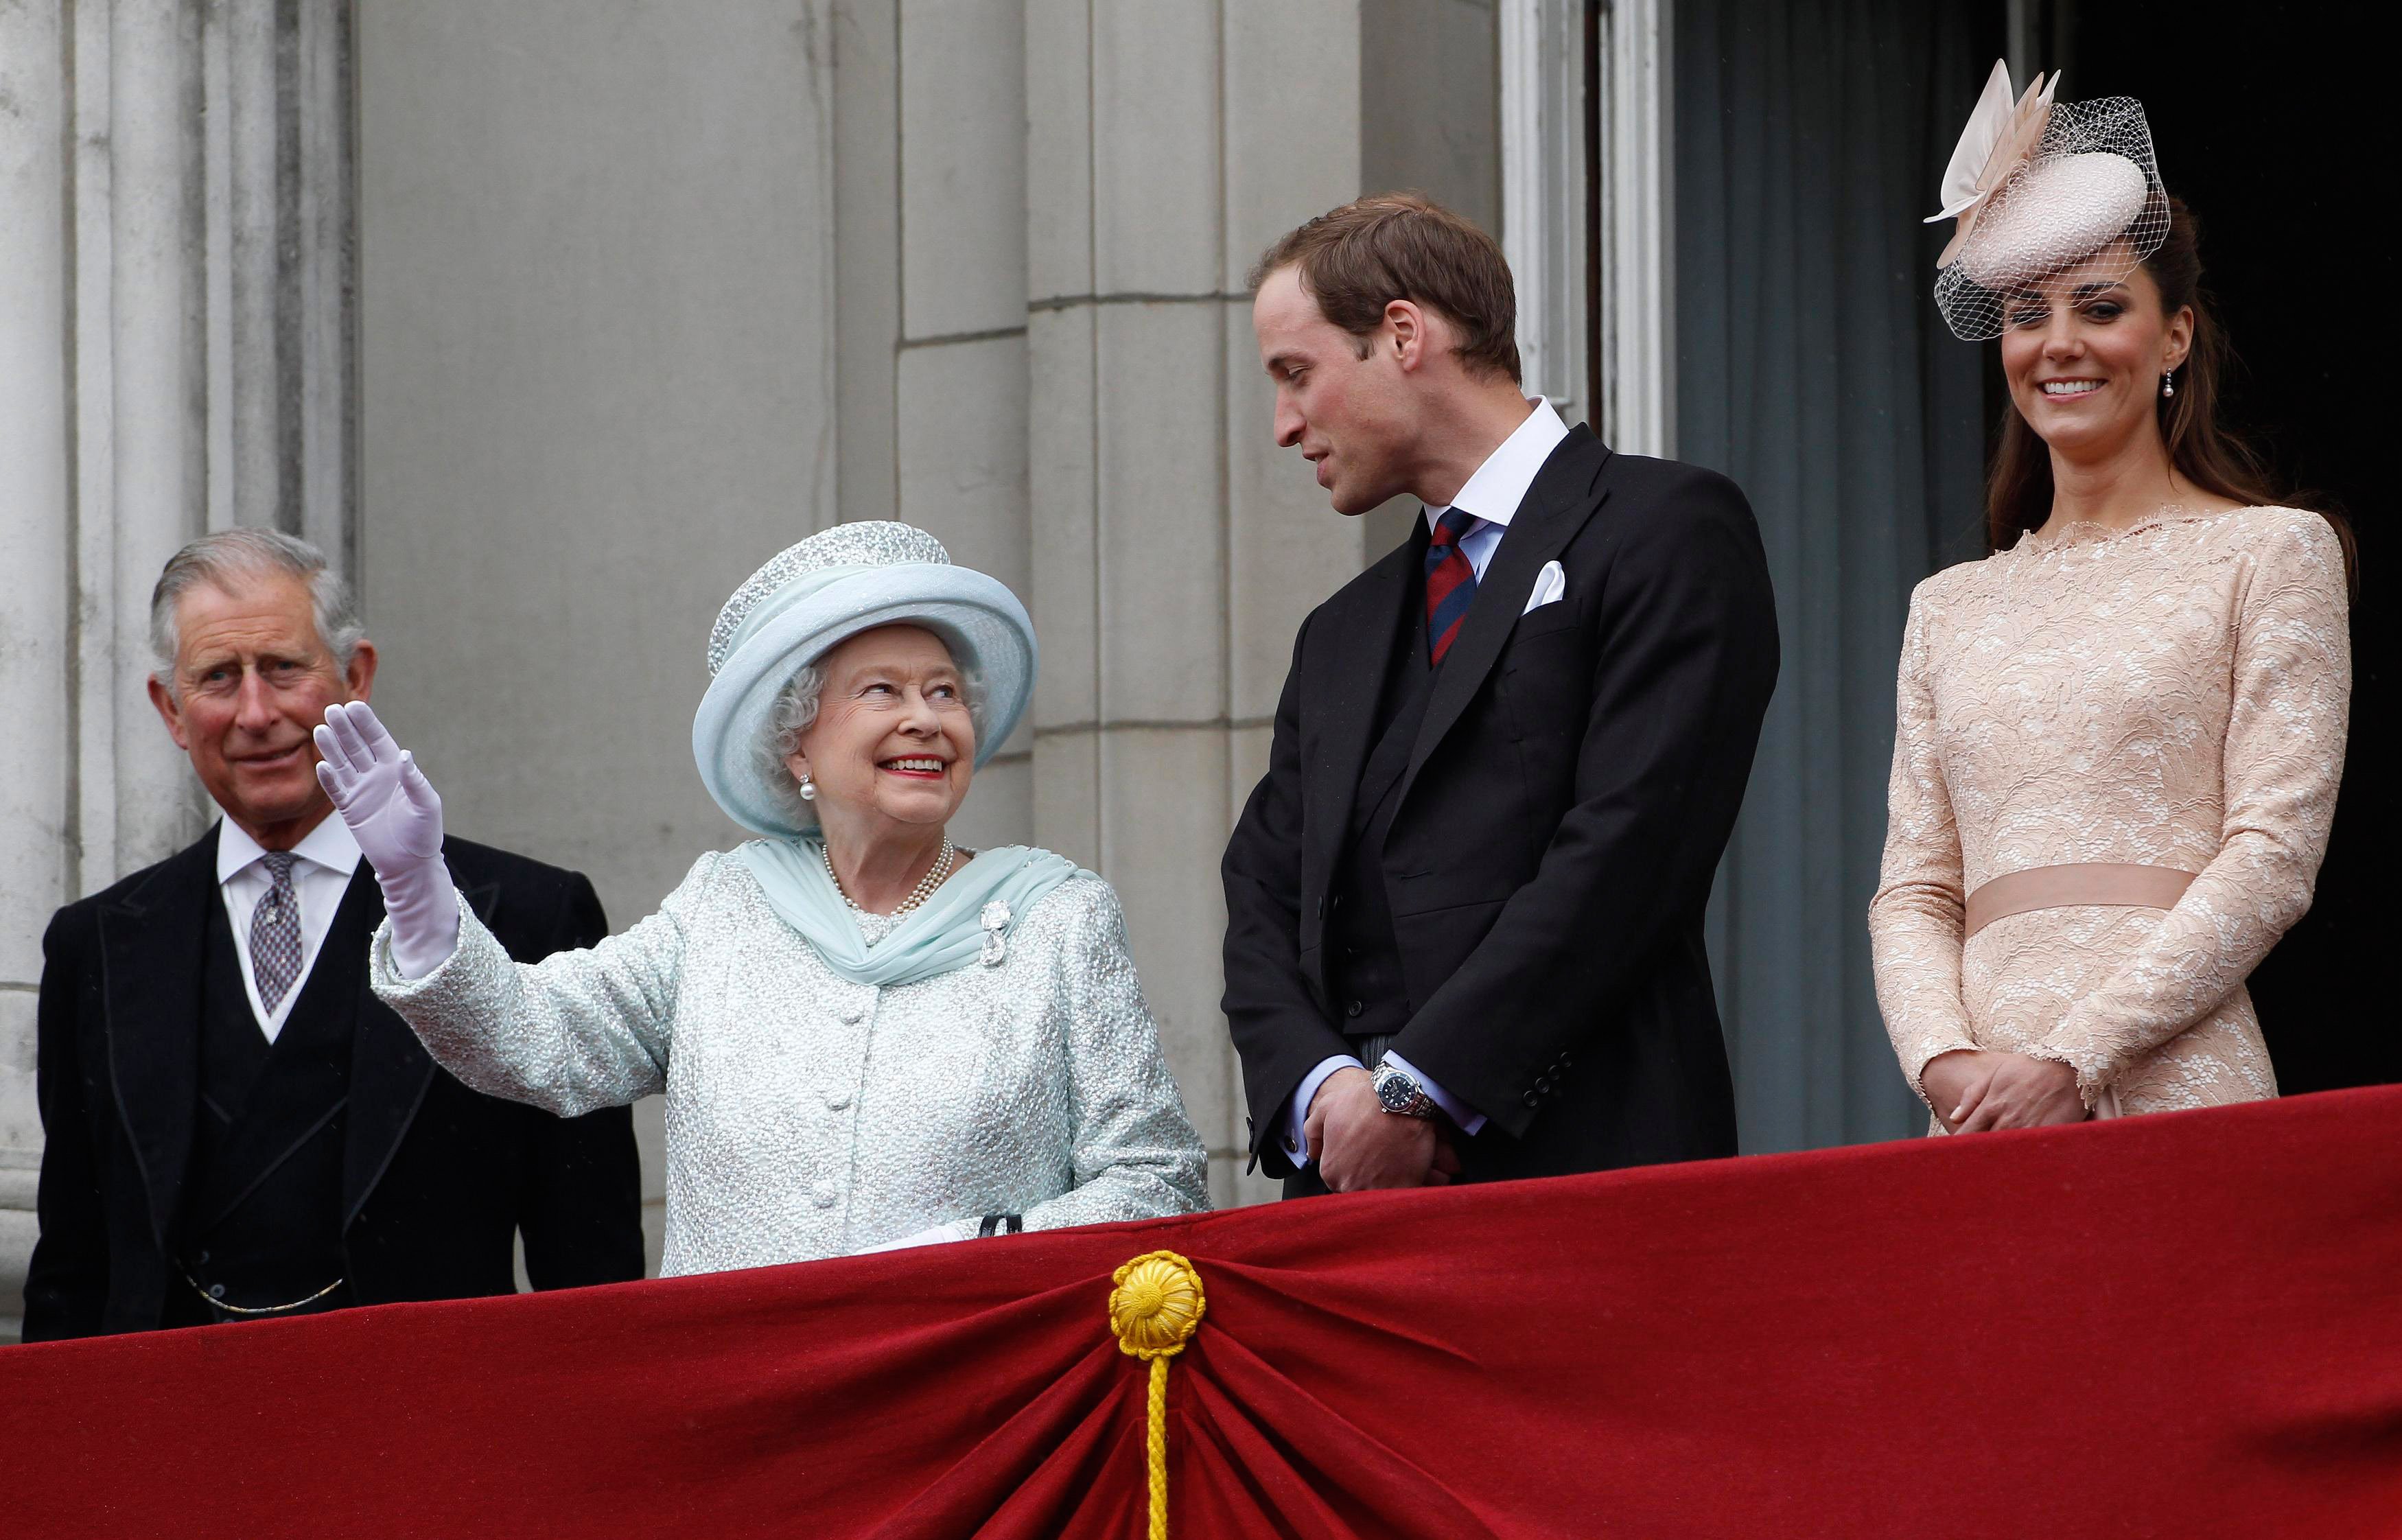 Le prince Charles, la reine Elizabeth II, le prince William et Kate Middleton sur le balcon du palais de Buckingham lors de la finale des célébrations du jubilé de diamant de la reine, le 5 juin 2012 à Londres, en Angleterre ┃Source : Getty Images